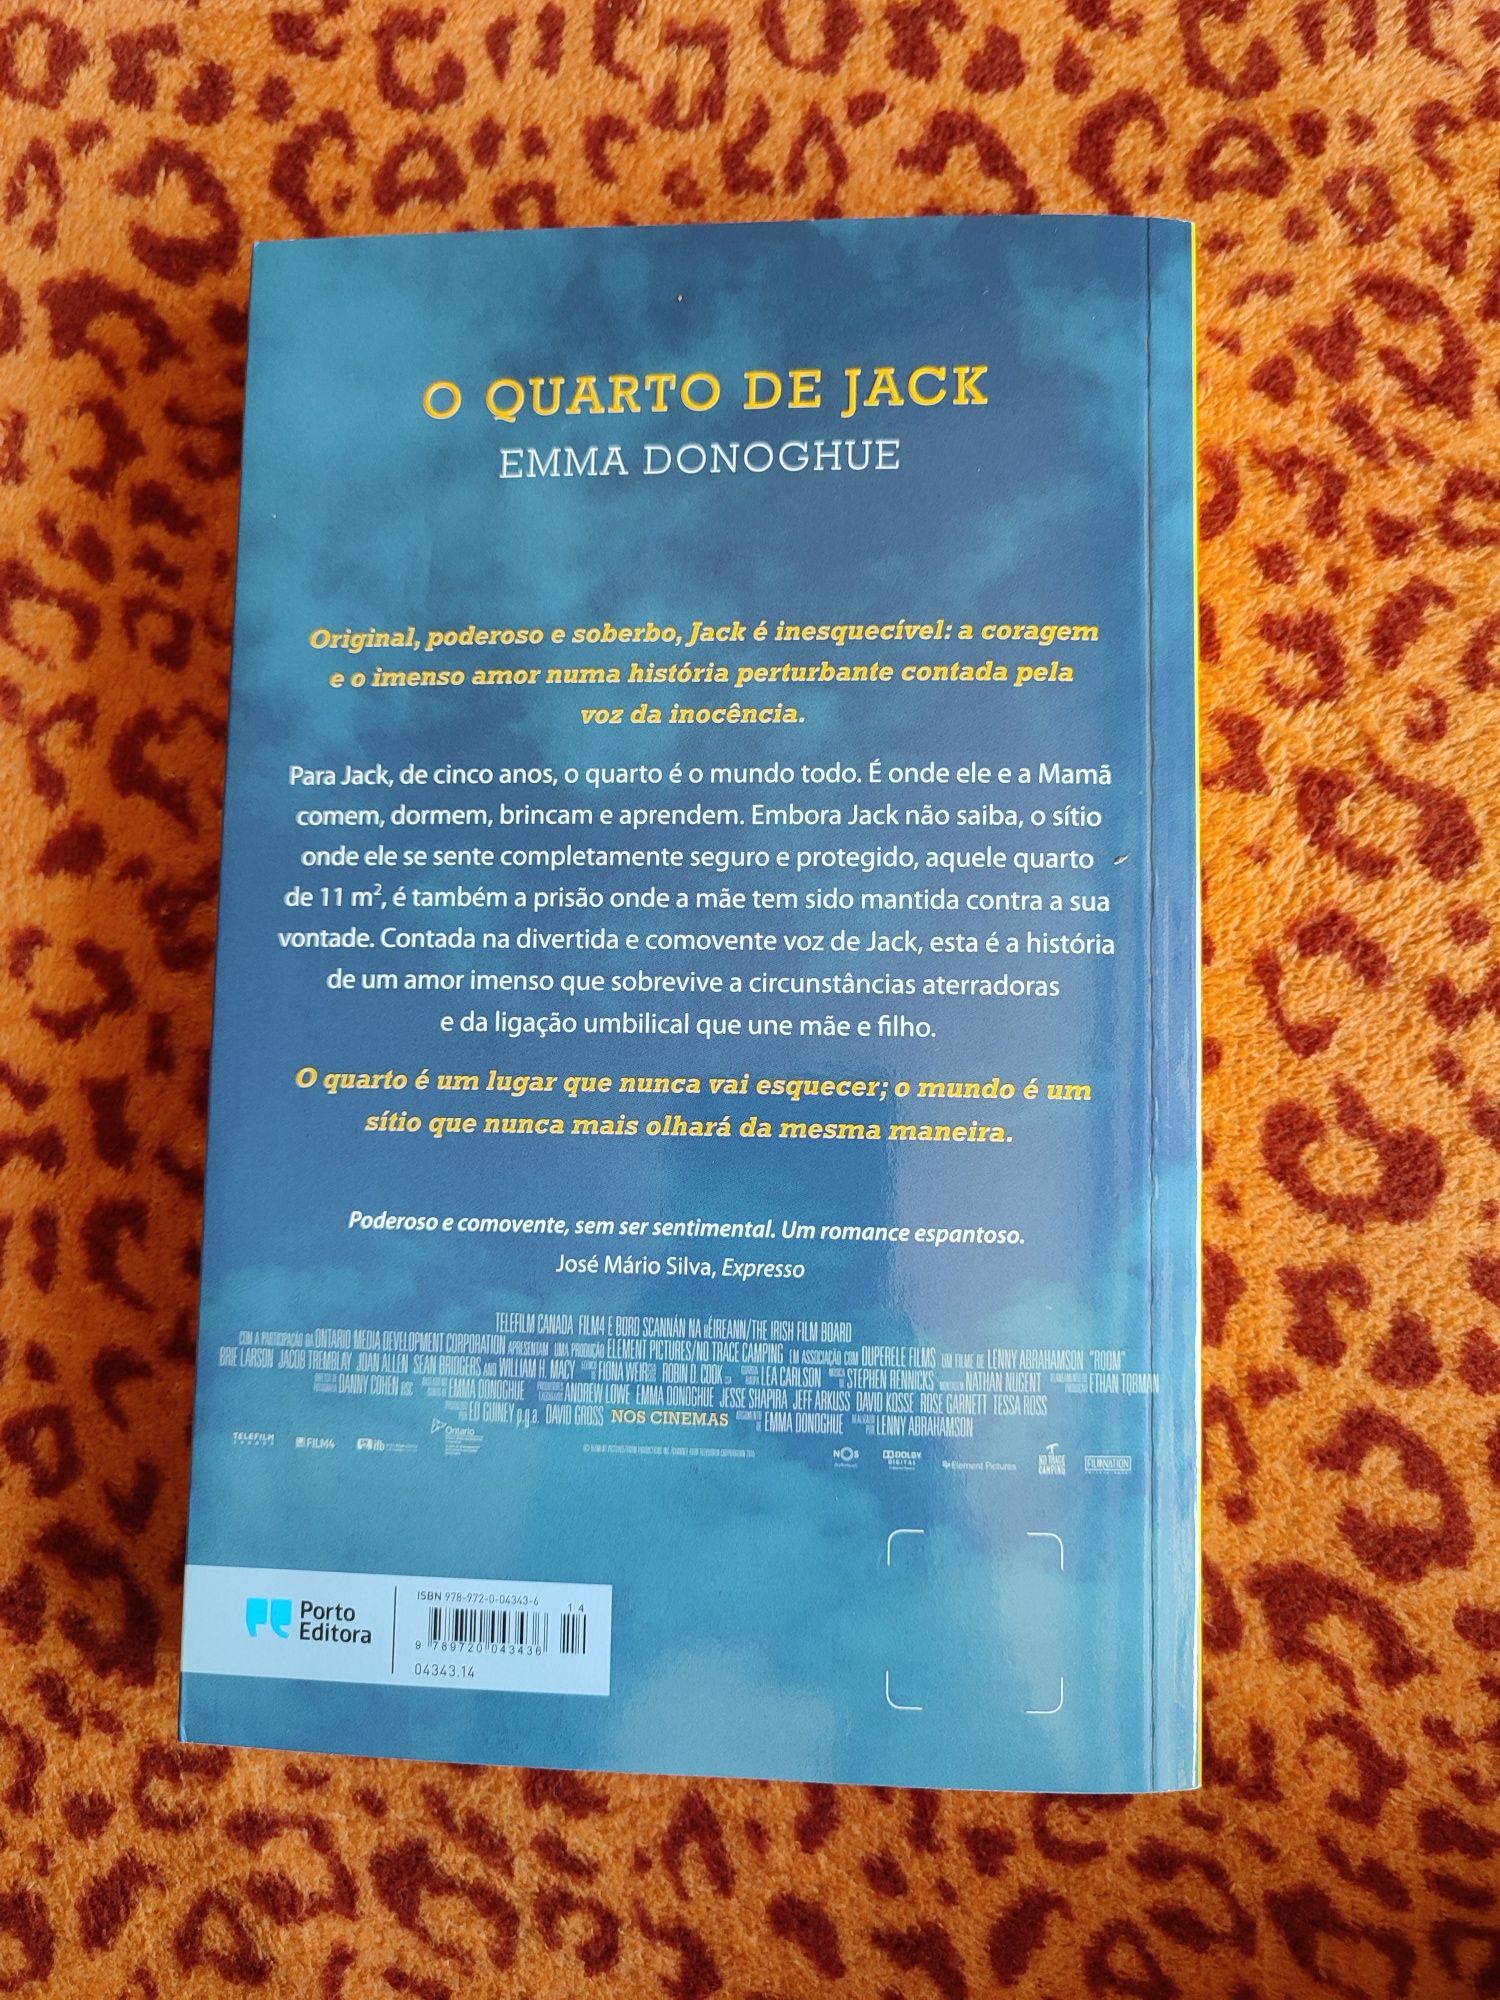 Livro "O quarto de Jack"